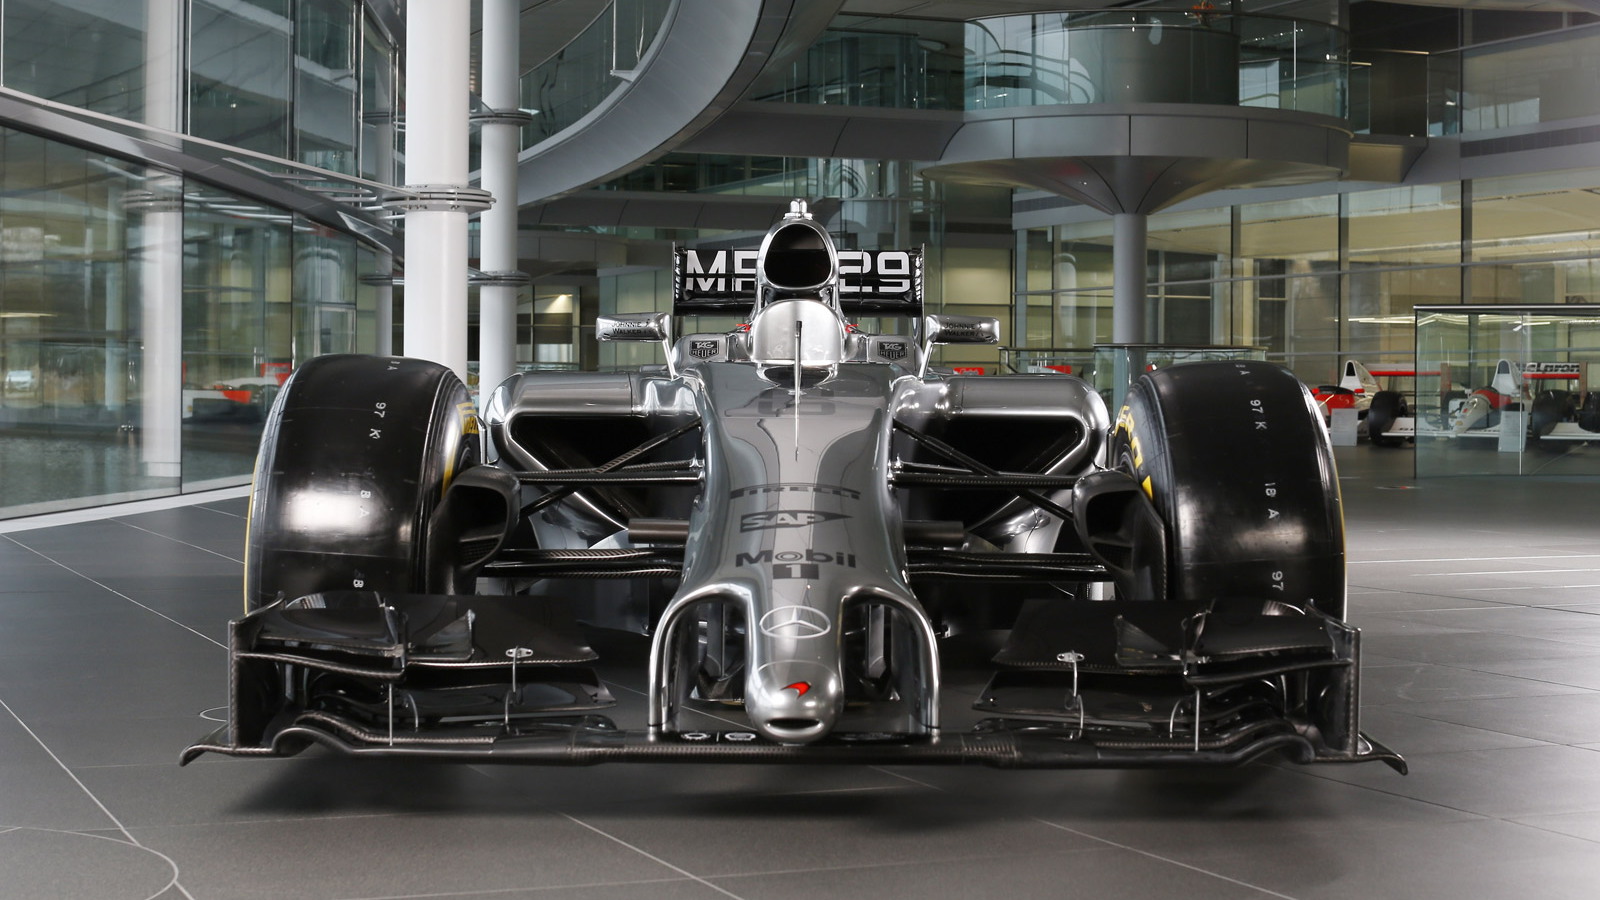 McLaren’s MP4-29 2014 Formula One car